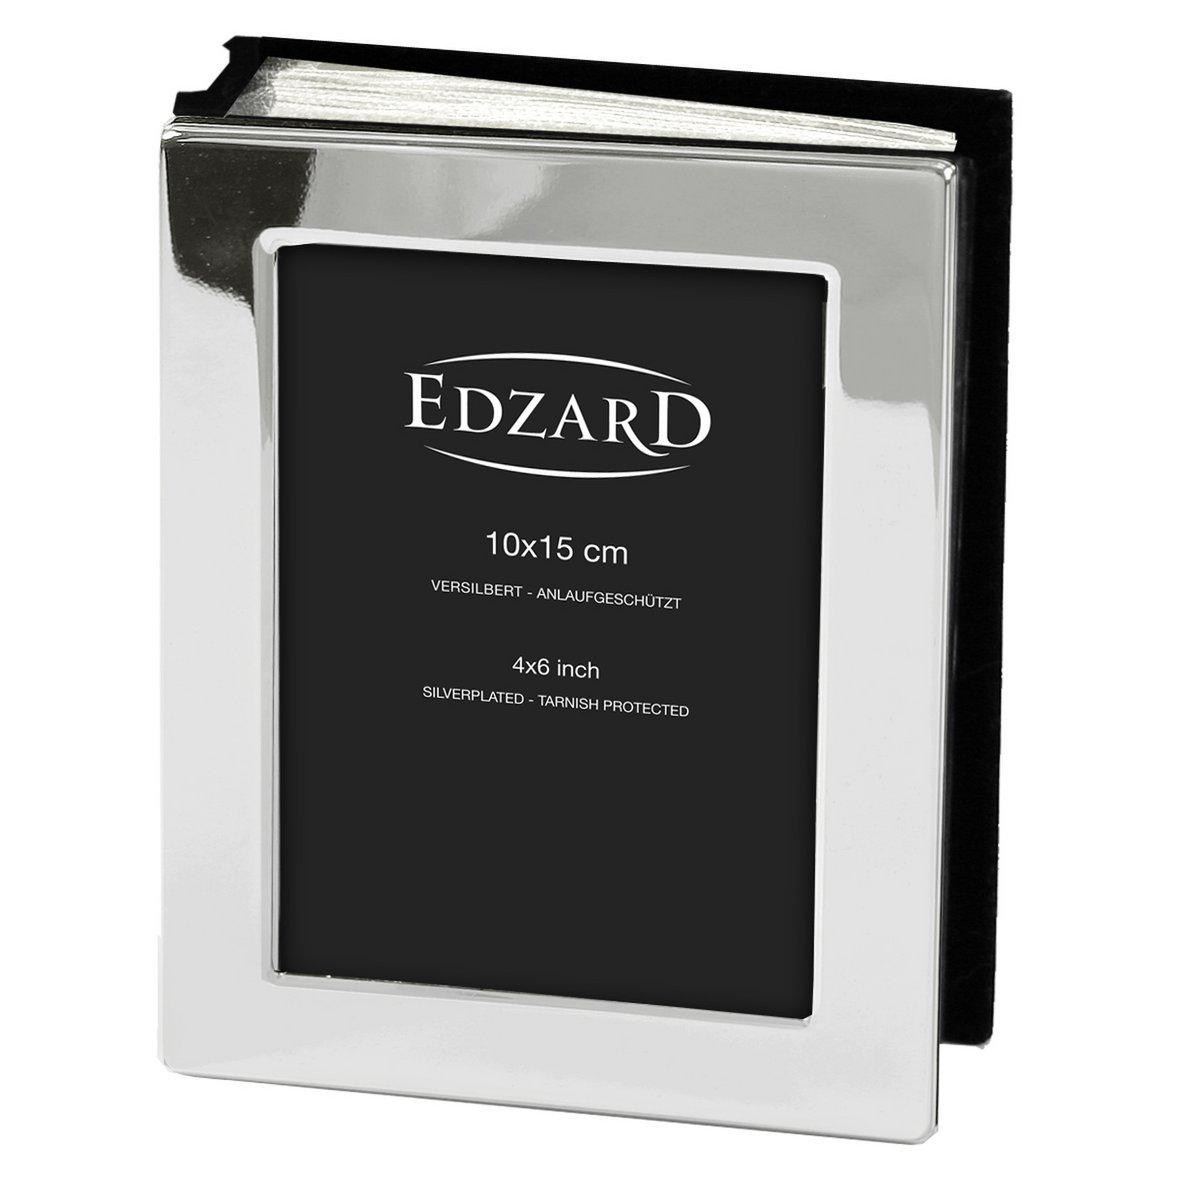 EDZARD Fotoalbum Album Lugano für 100 Fotos 10 x 15 cm, edel versilbert, anlaufgeschützt - HomeDesign Knaus